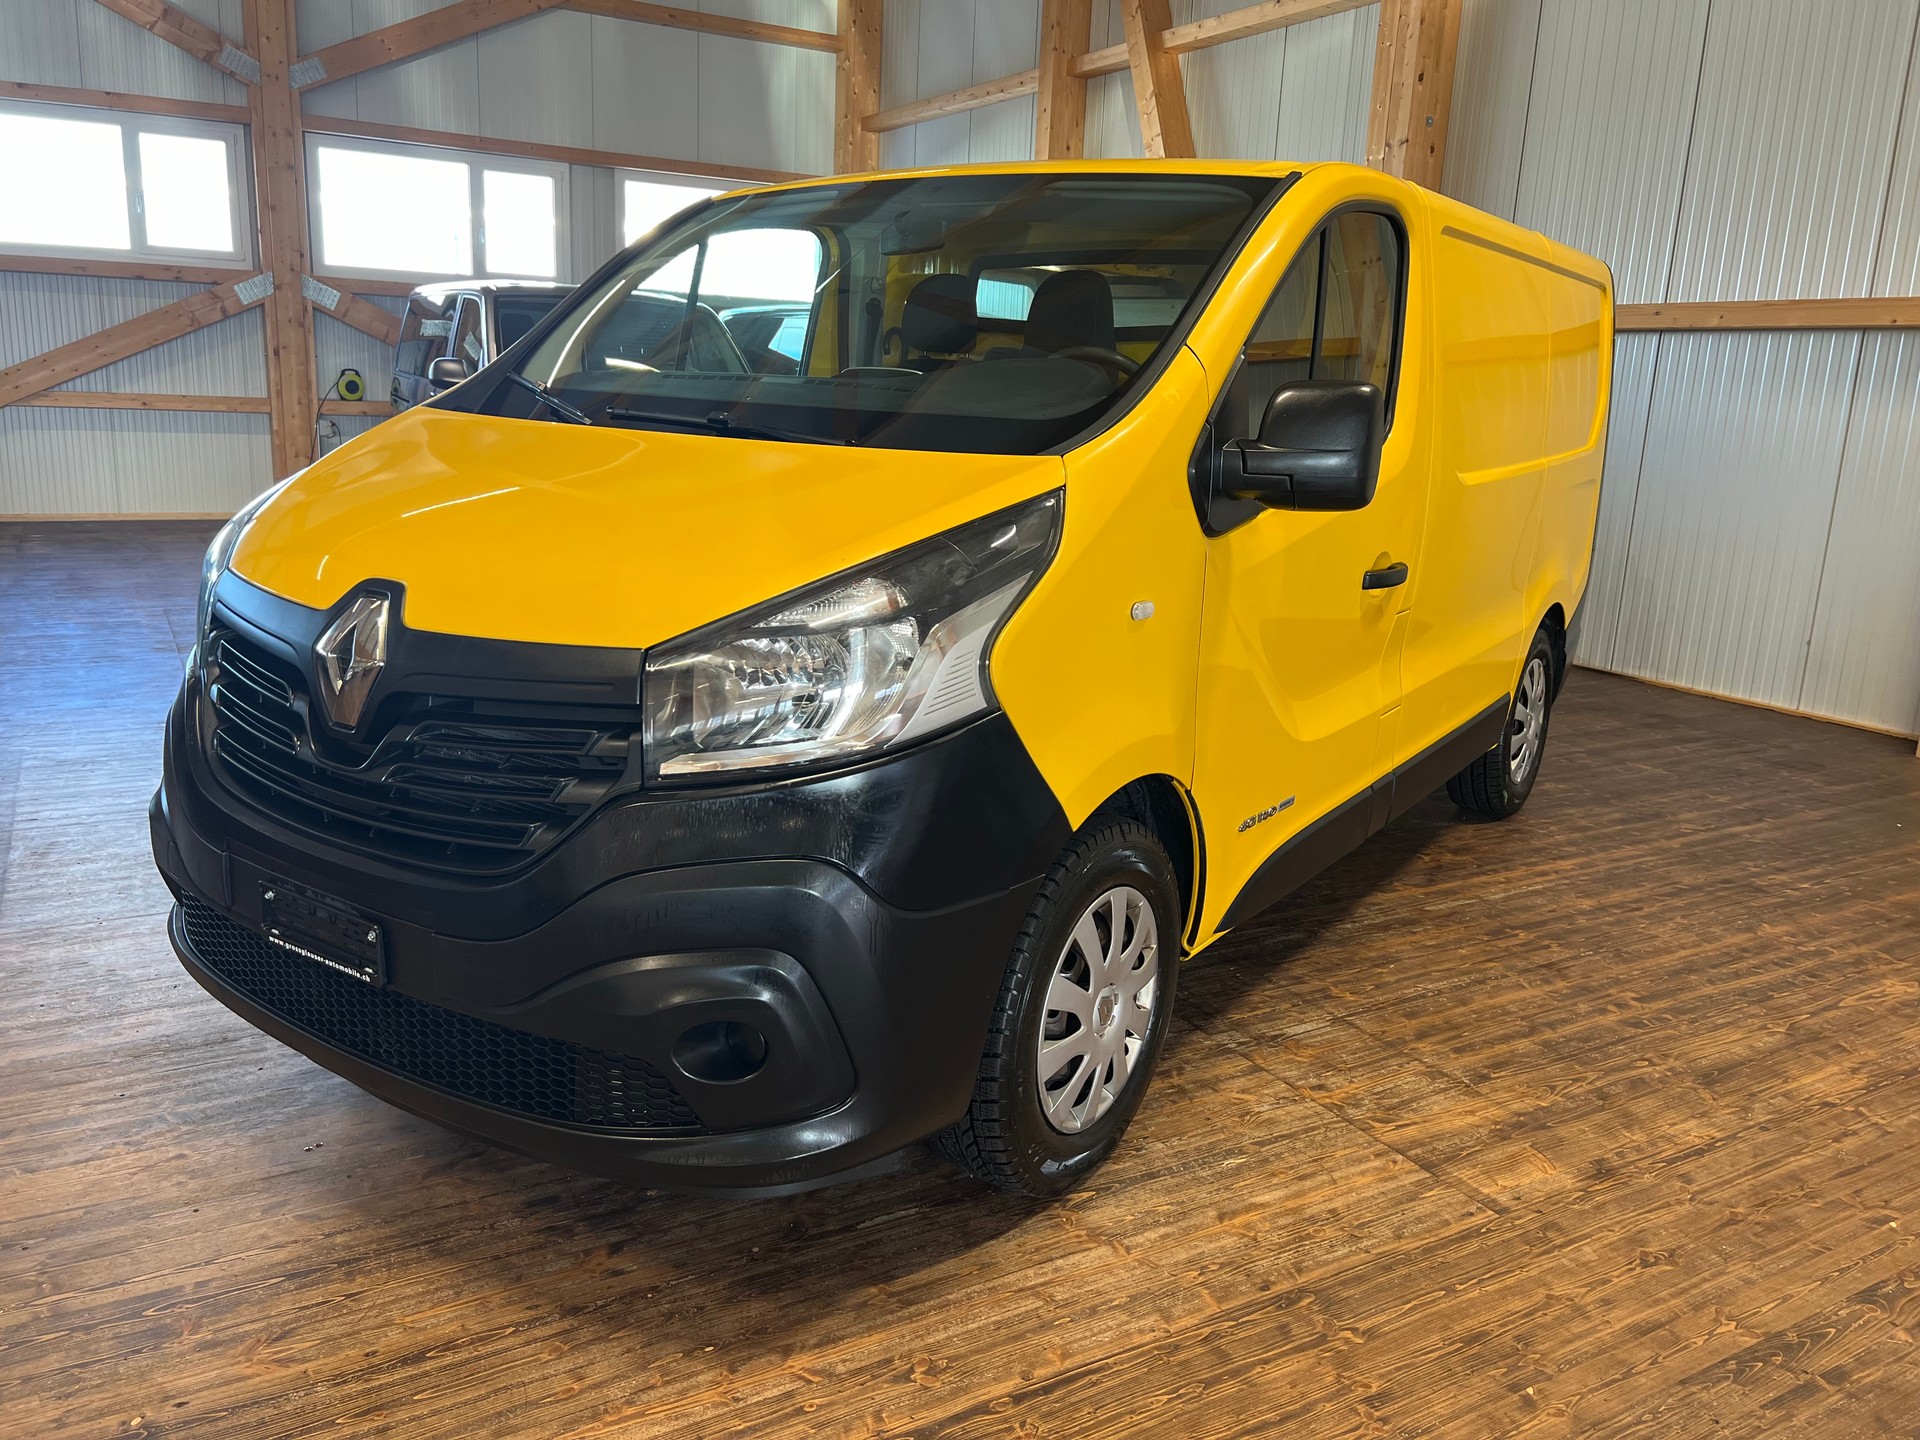 Véhicules utilitaires Renault neufs à vendre, achat de véhicules  utilitaires Renault neufs et occasion